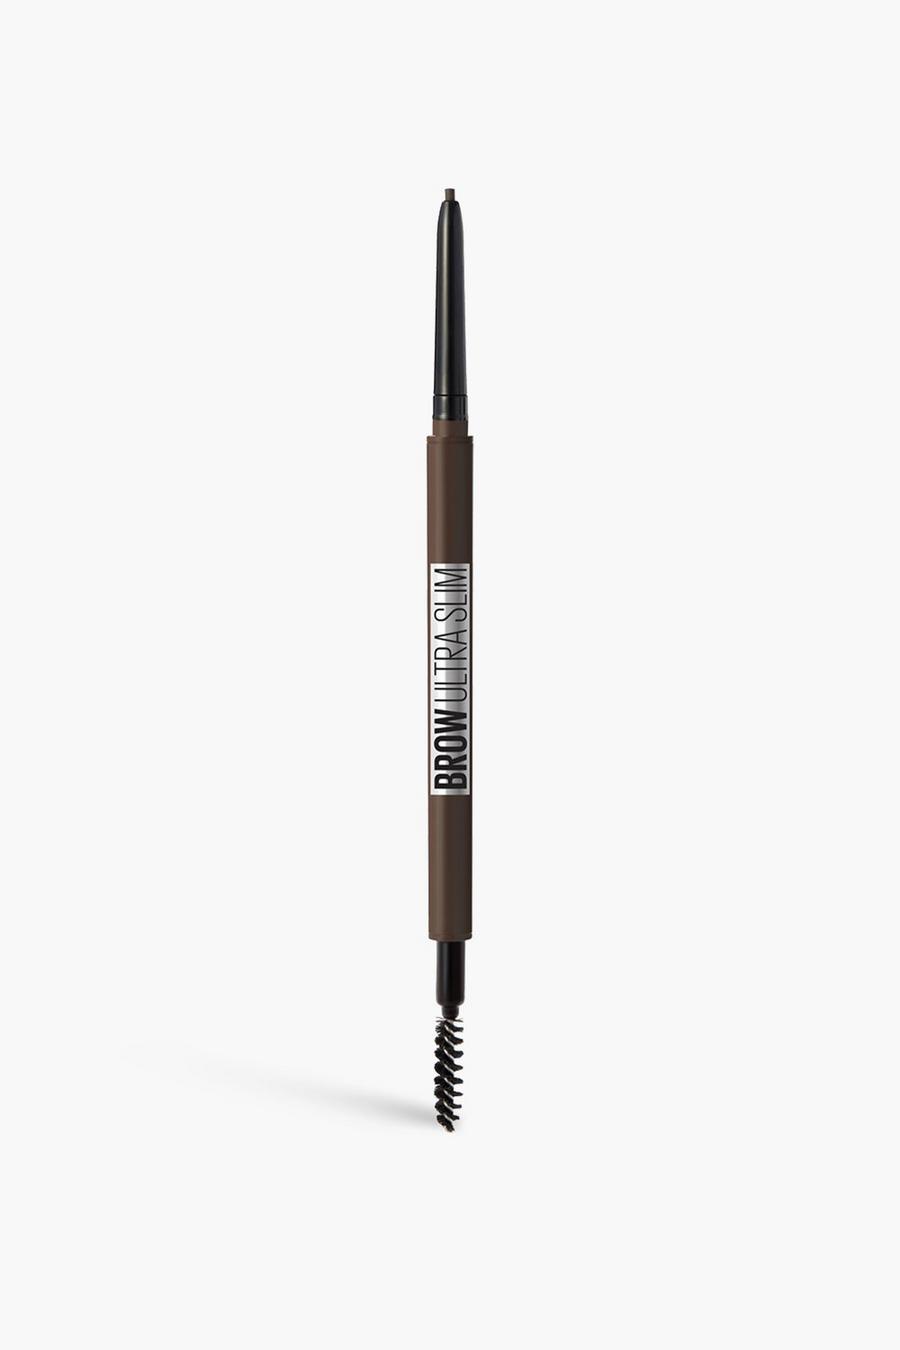 Maybelline Ultra Slim Defining Augenbrauen-Stift, Black schwarz